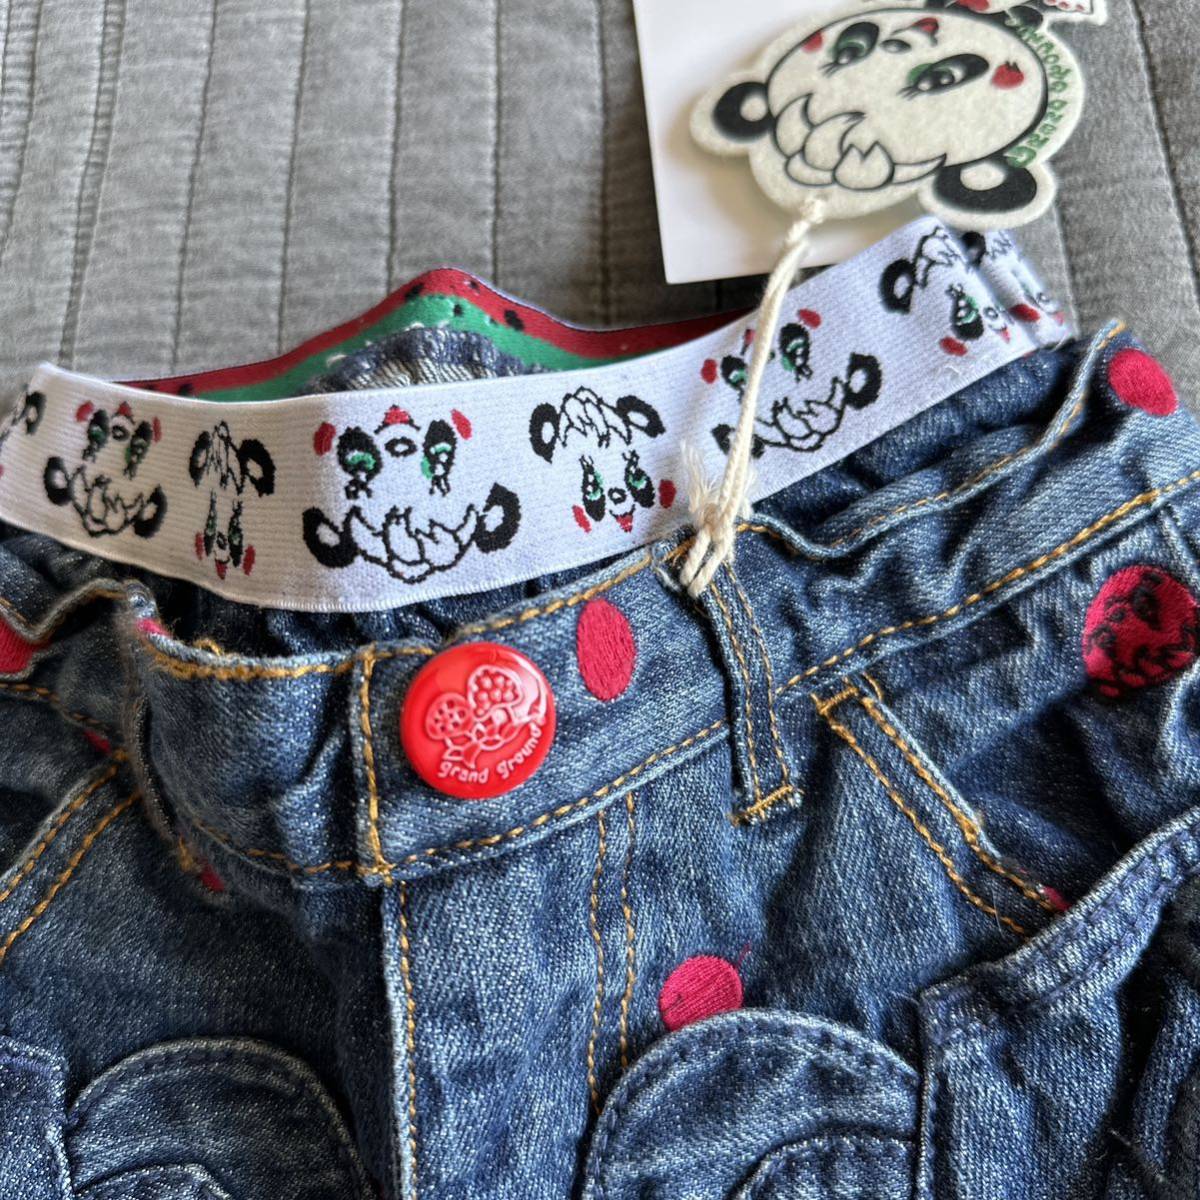  новый товар g ковер la немедленно полная распродажа Panda обезьяна L Denim брюки 110 обычная цена 7980 иен голубой мужчина девочка Kids ребенок одежда джинсы . лицо нет pli точка 